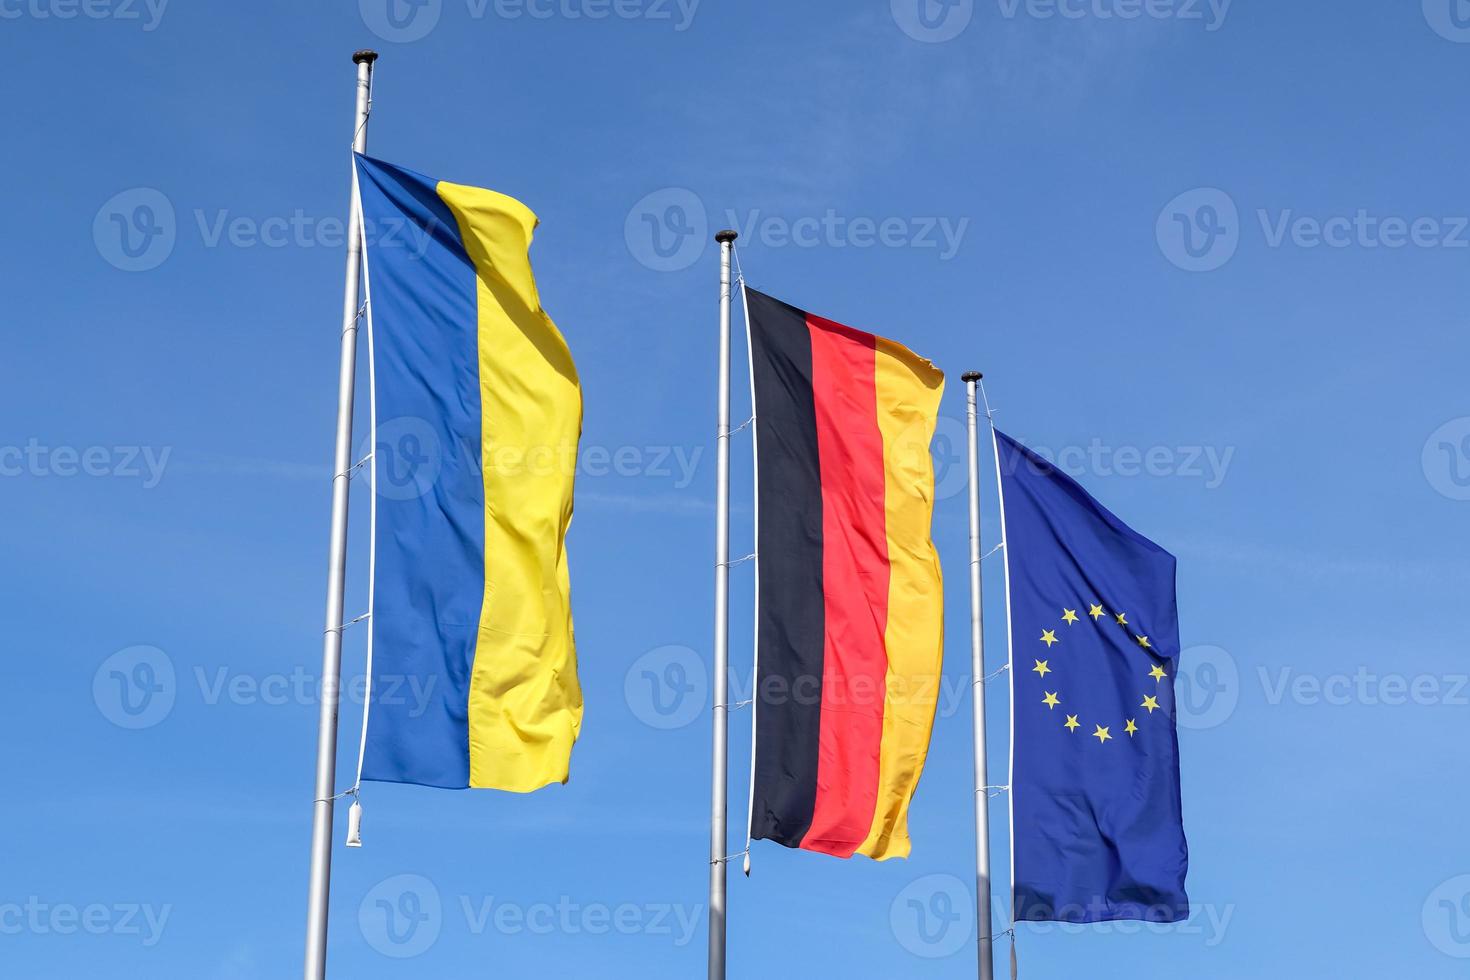 bandeiras da ucrânia, alemanha e união europeia voam lado a lado contra o céu azul. foto